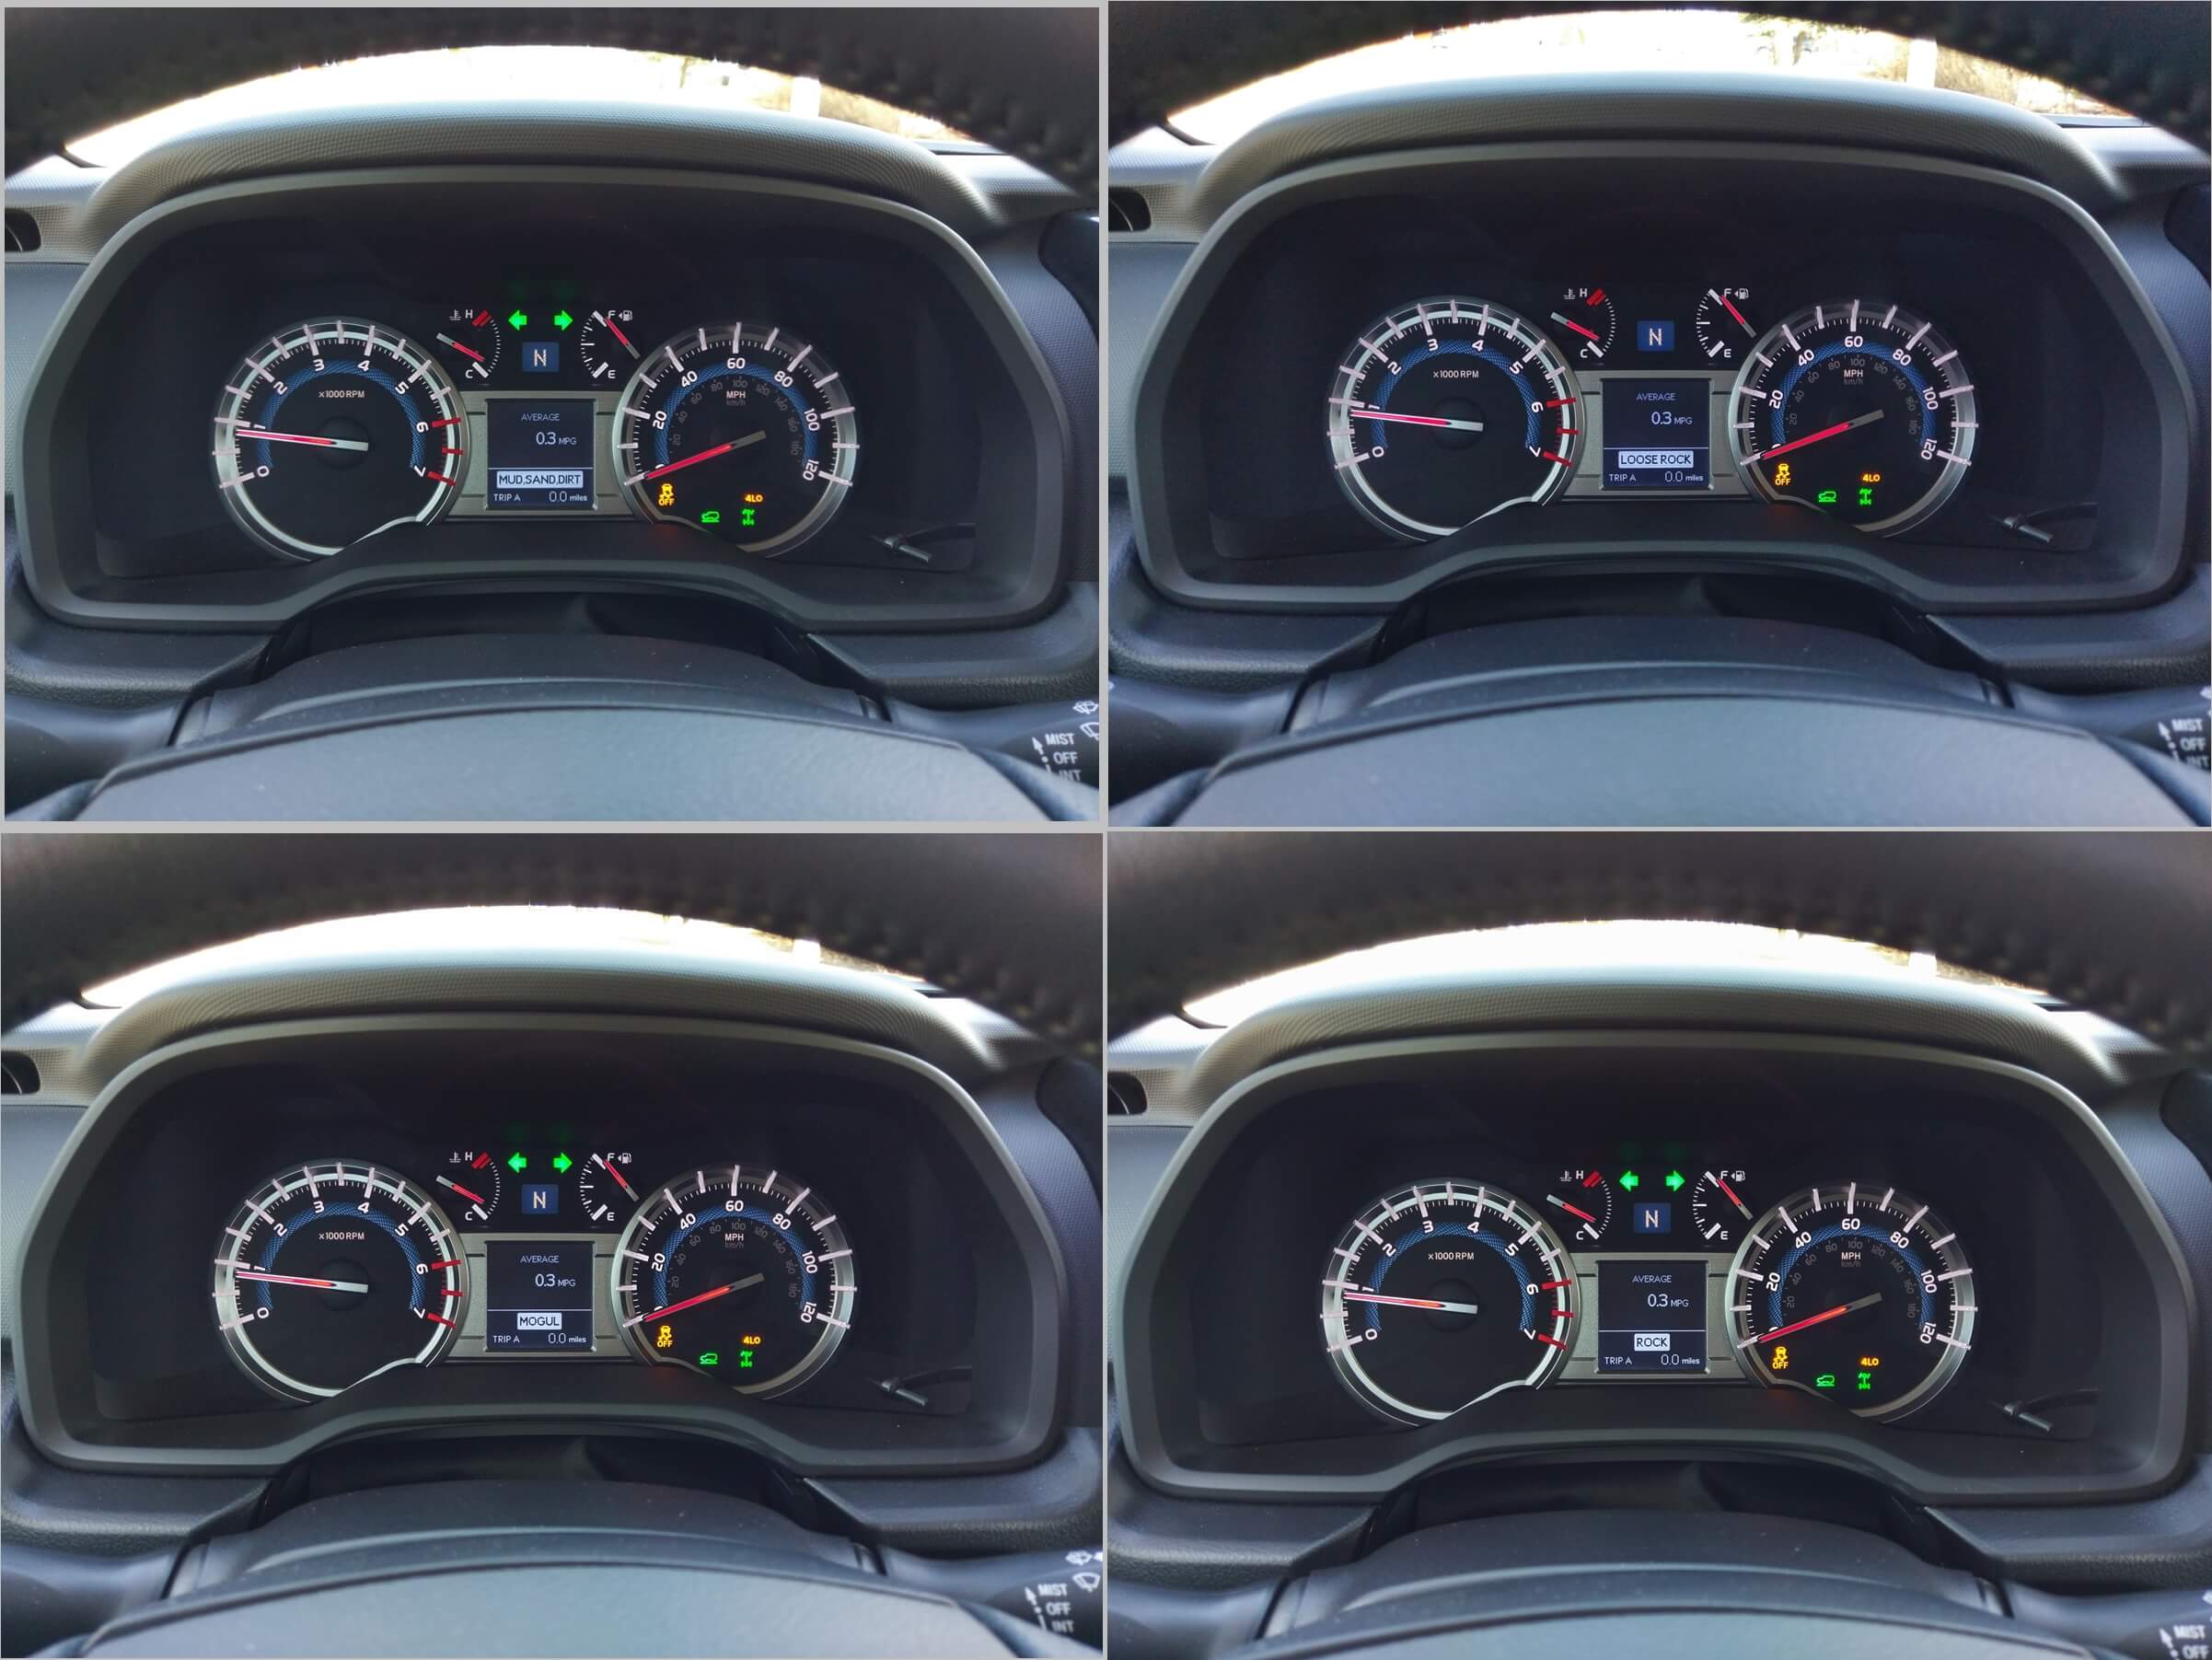 2017 Toyota 4Runner TRD Pro: MultiTerrain off-road drive mode settings